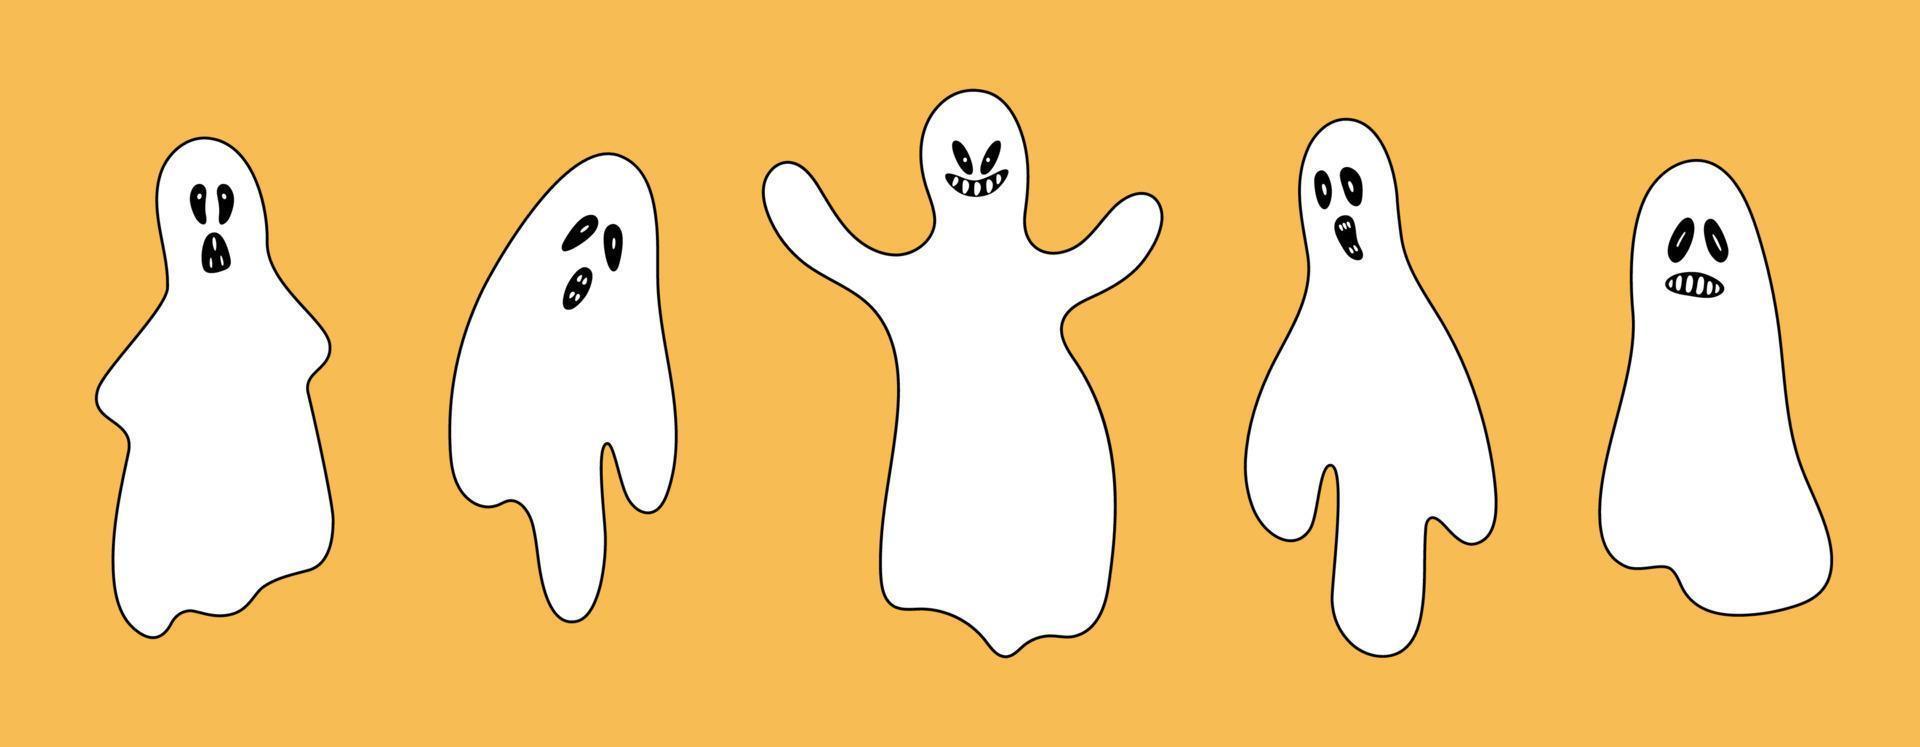 conjunto de doodle fantasmas assustadores coleção de fantasmas assustadores de halloween vetor